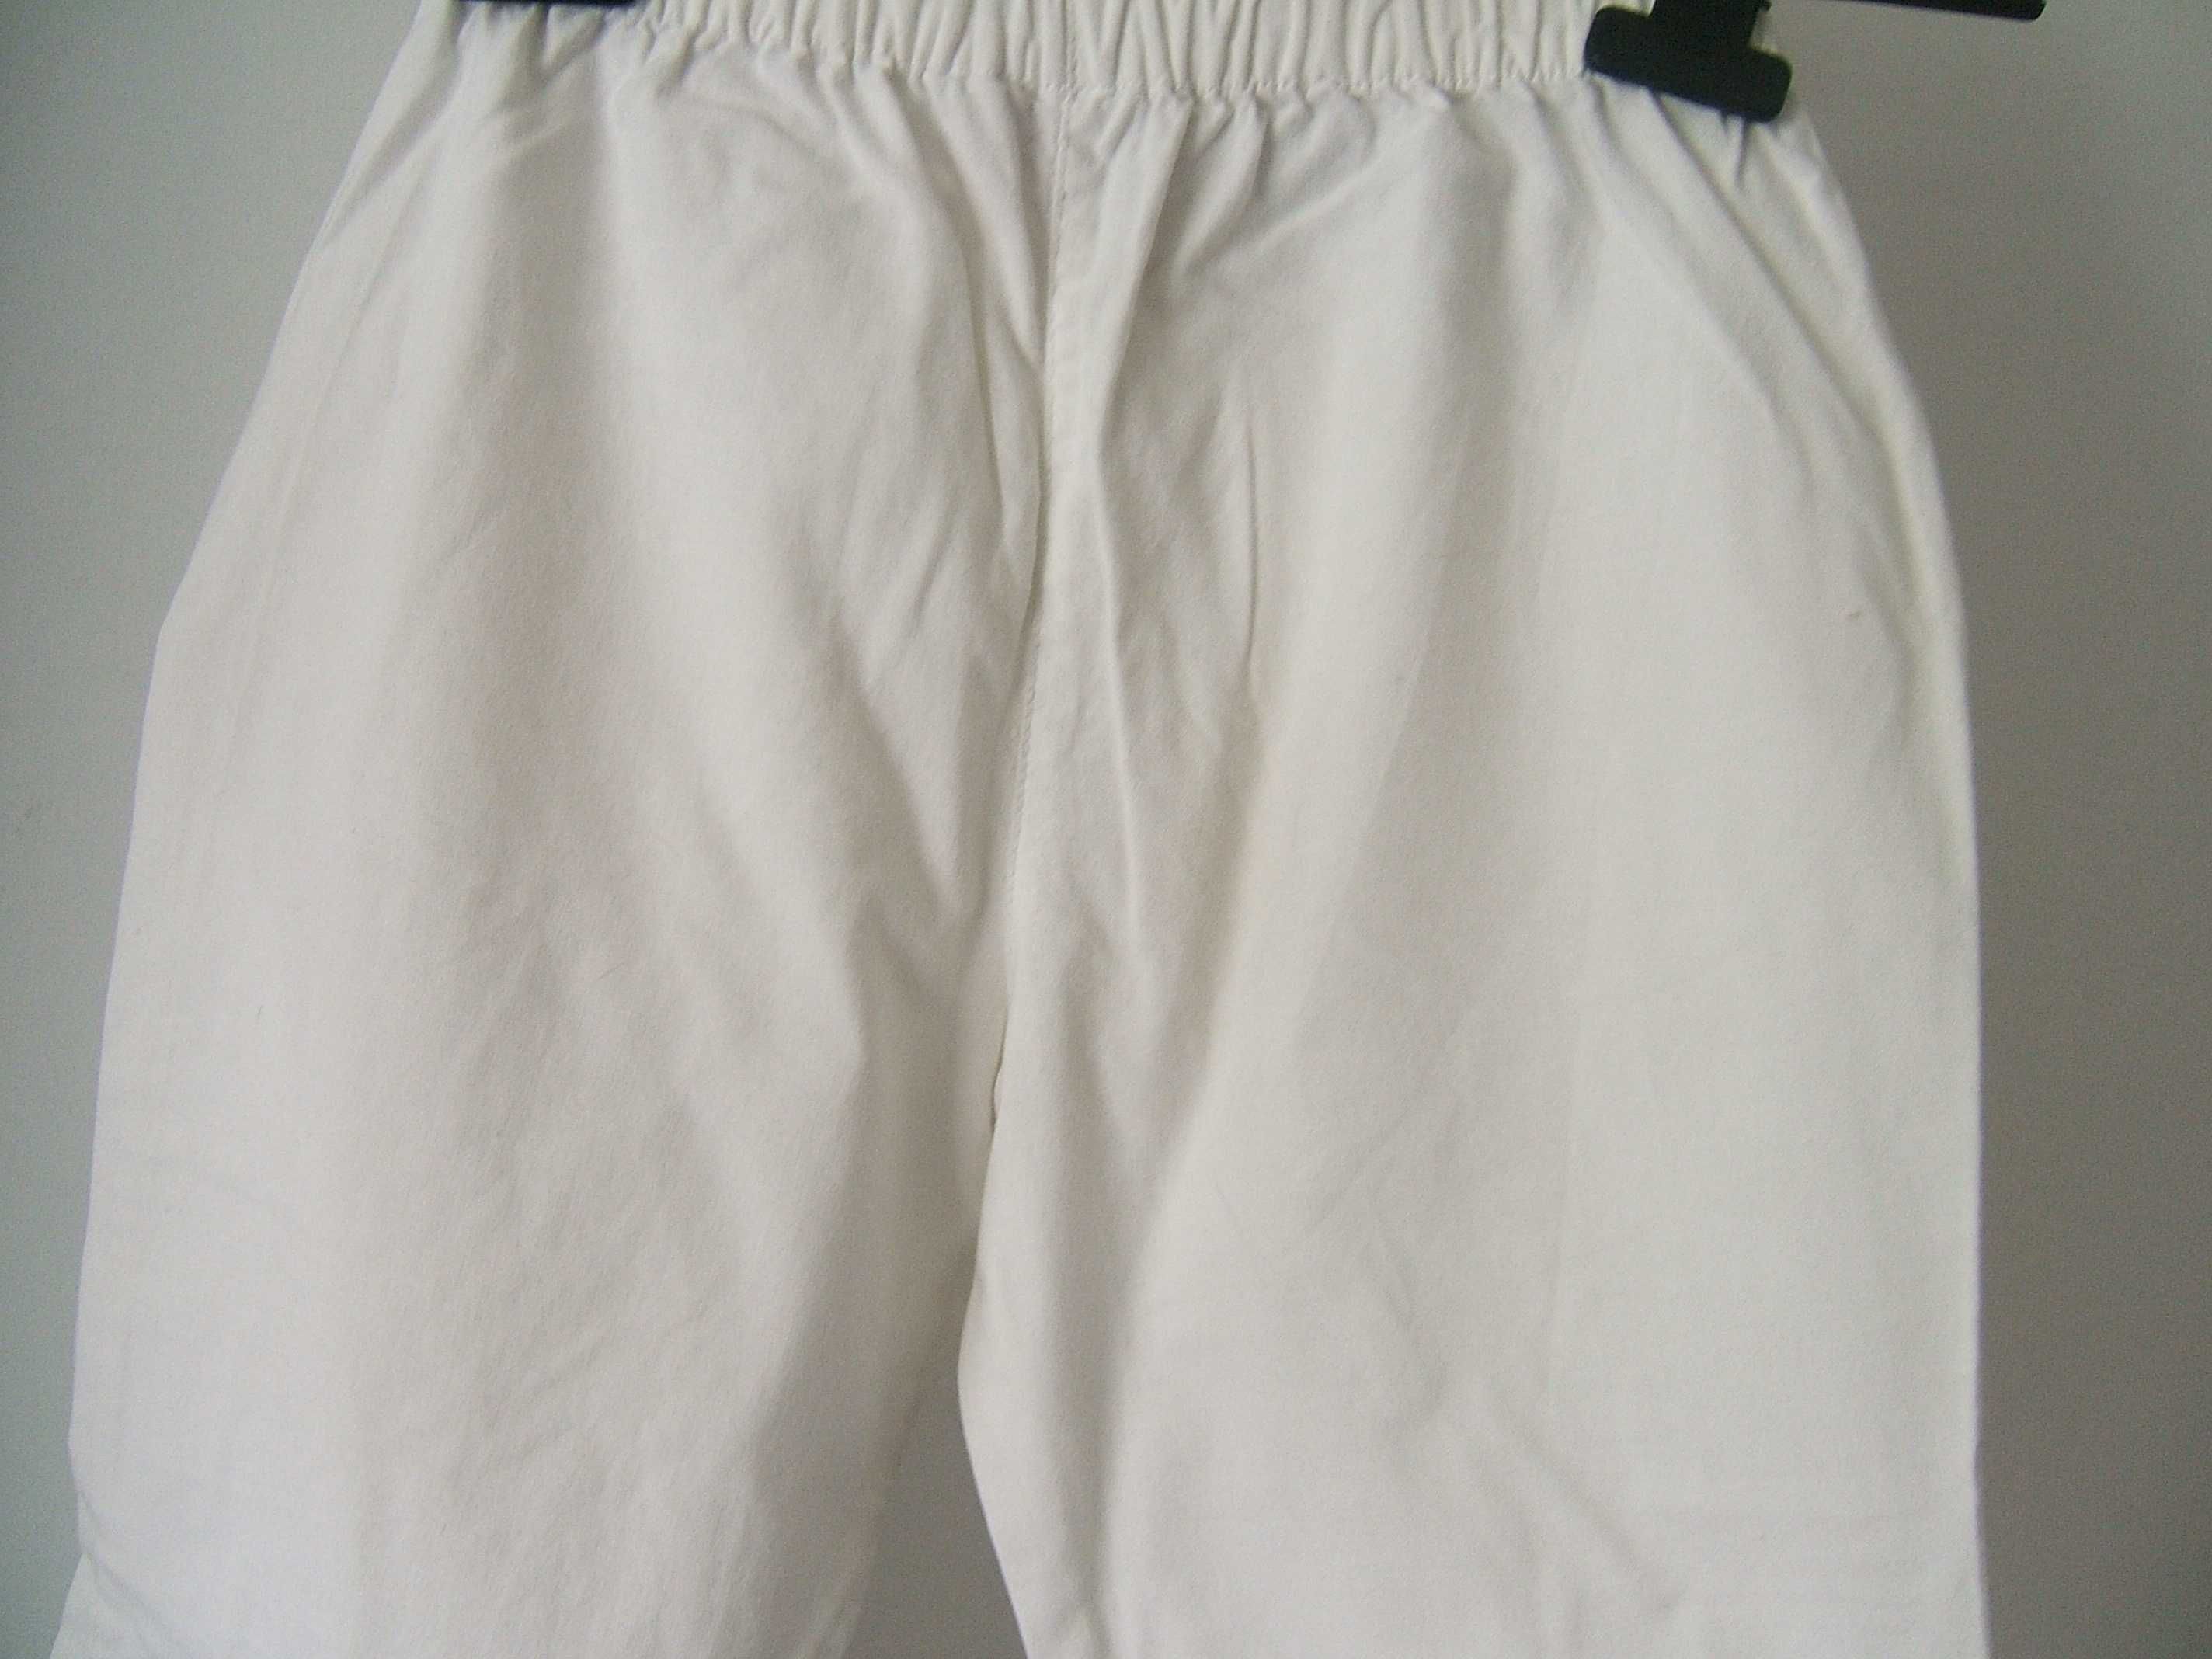 Calções brancos de tecido 7/8 cintura ajustável -Kiff